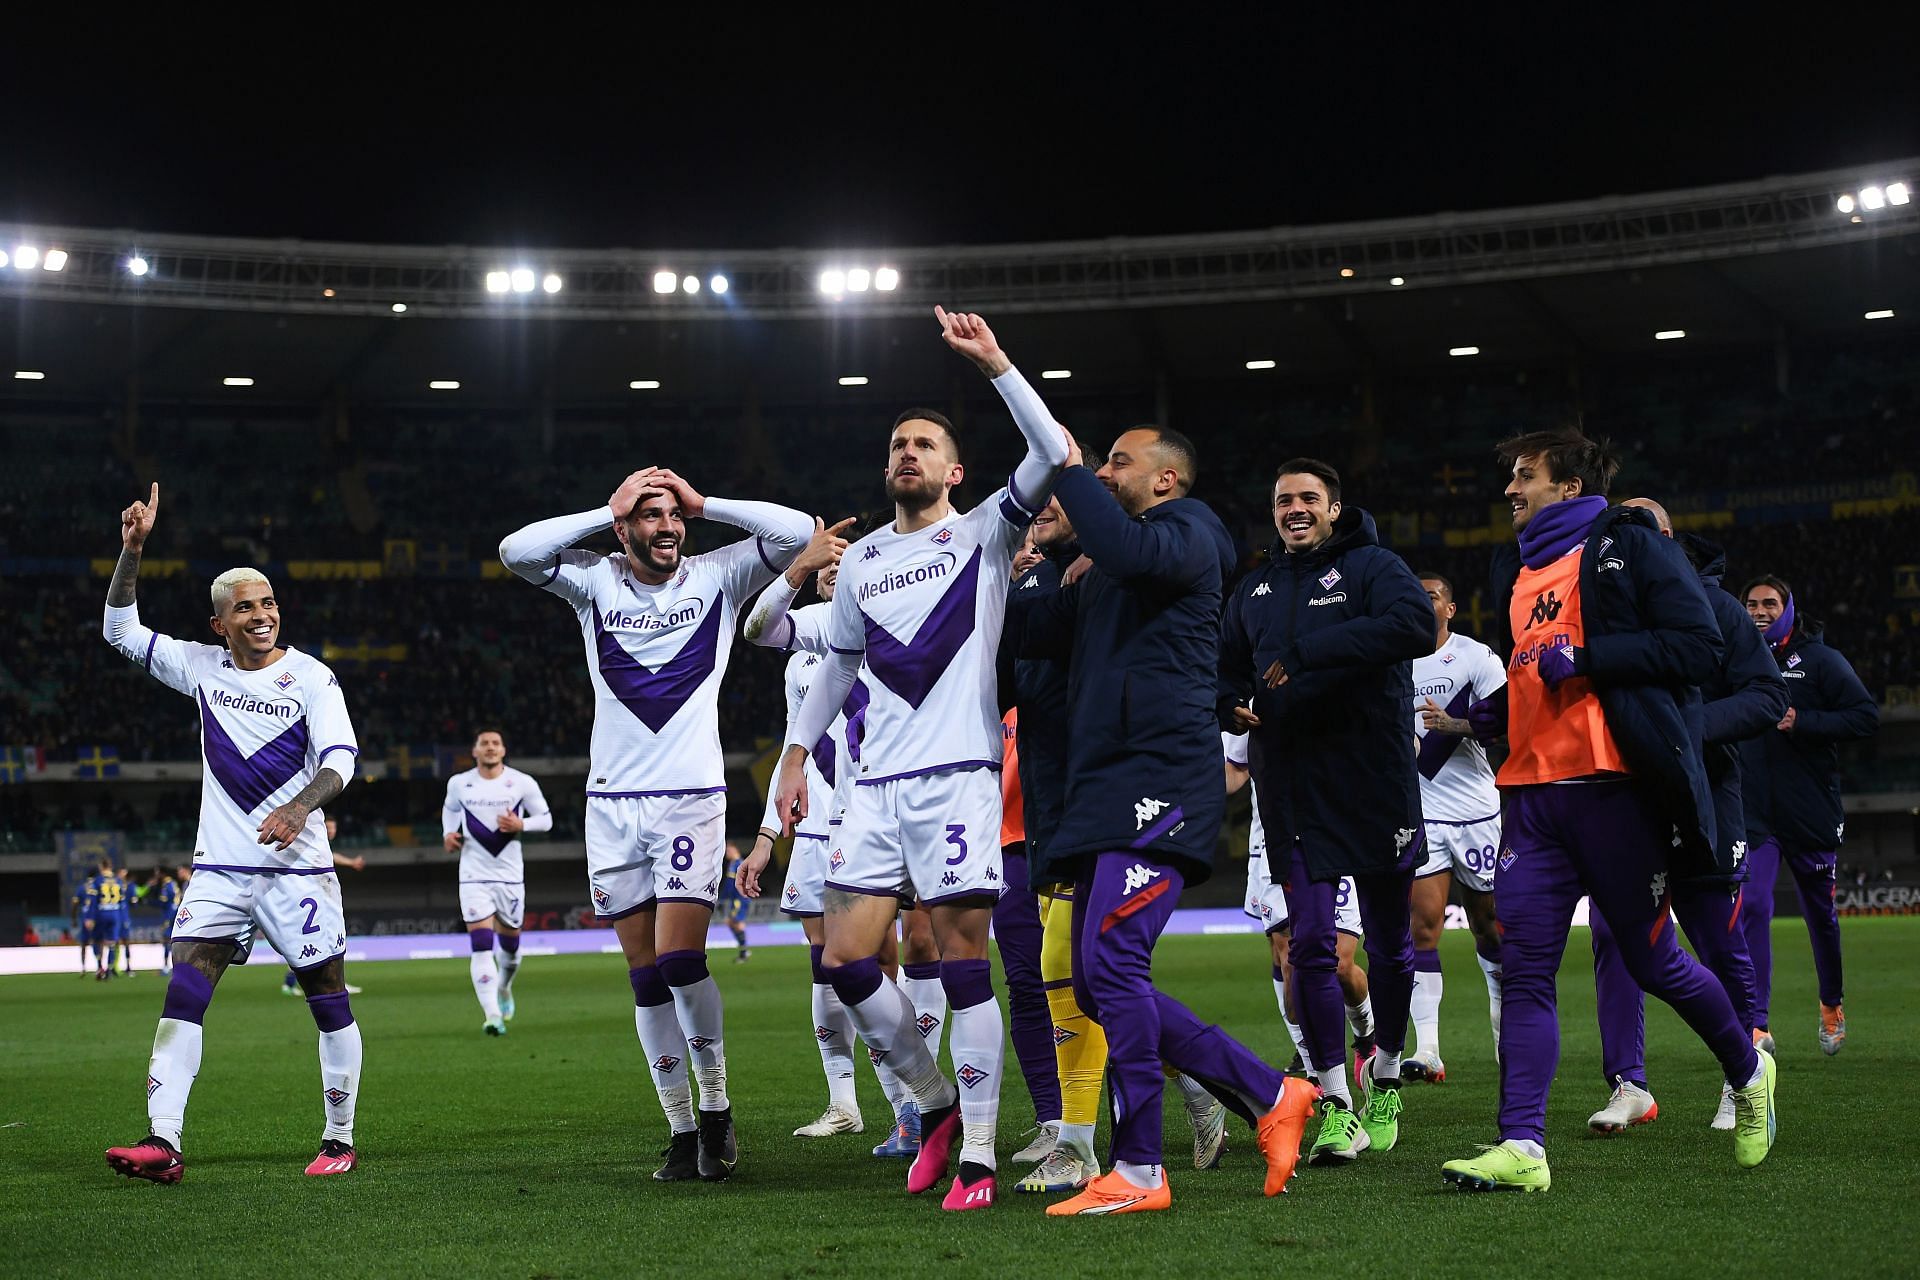 Fiorentina vs Ferencvarosi TC Prediction, Odds & Betting Tips 10/05/2023